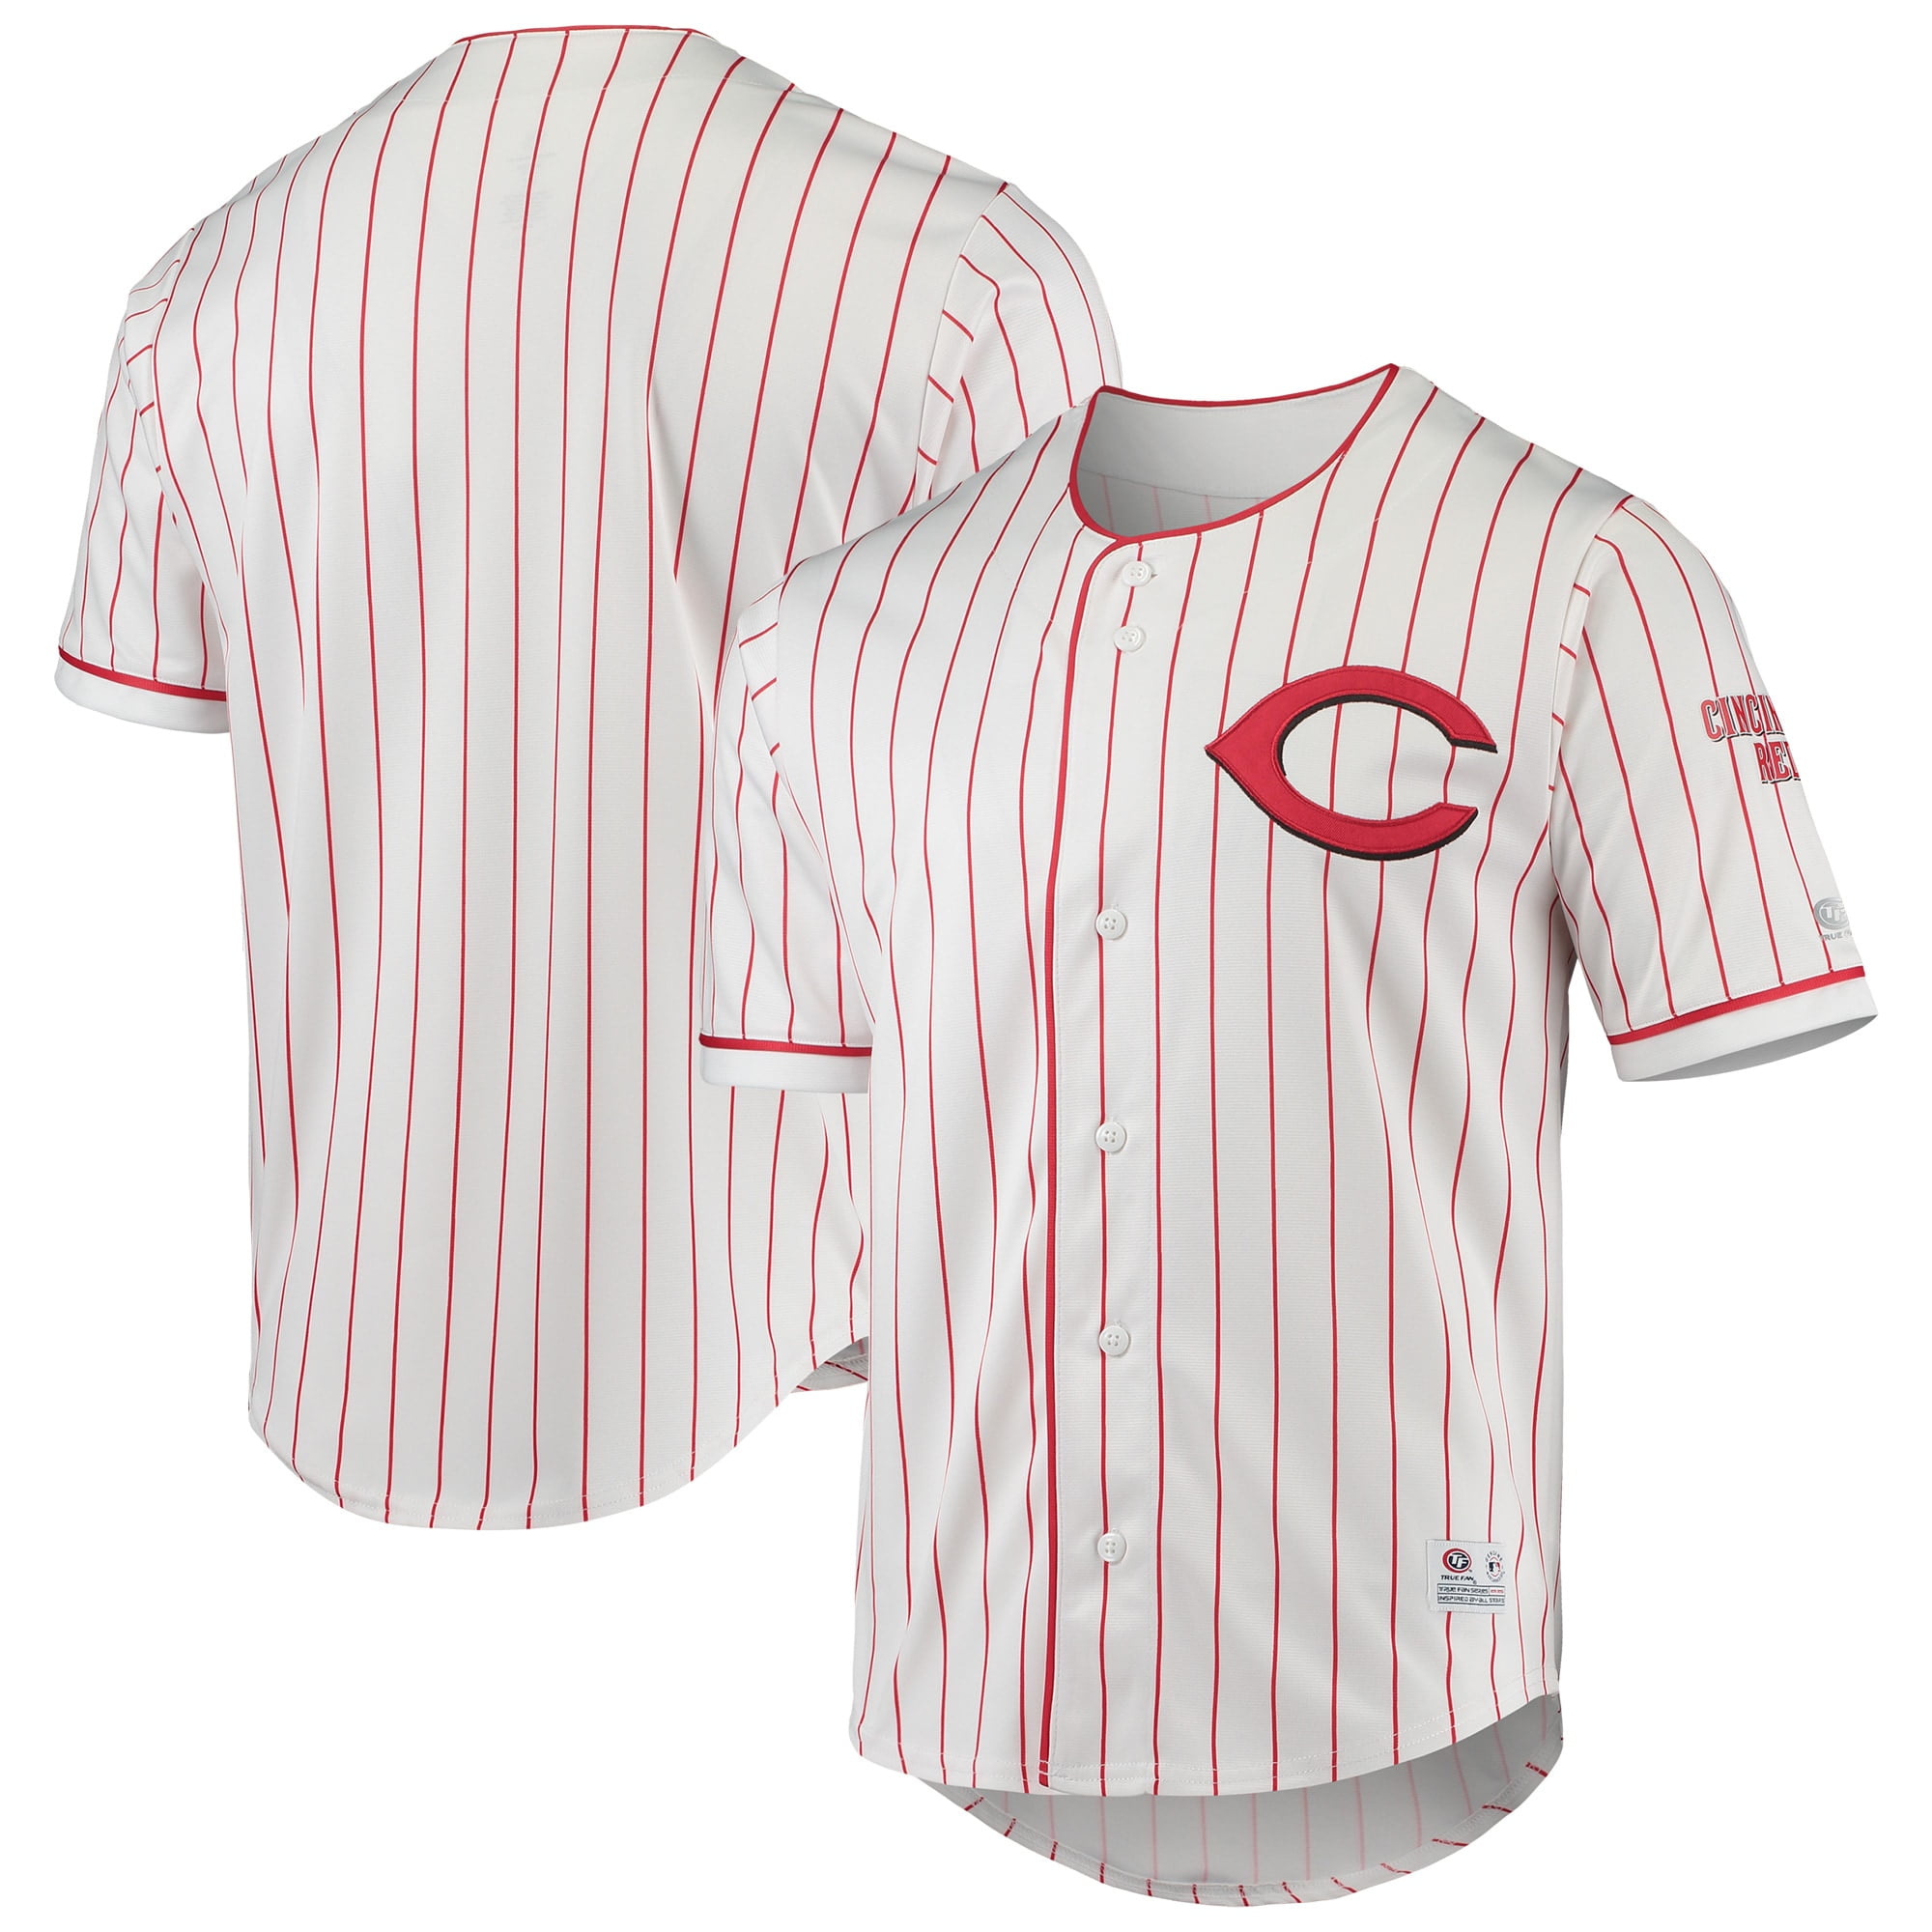 Cincinnati Reds MLB Baseball Jersey Shirt For Fans - Bluefink